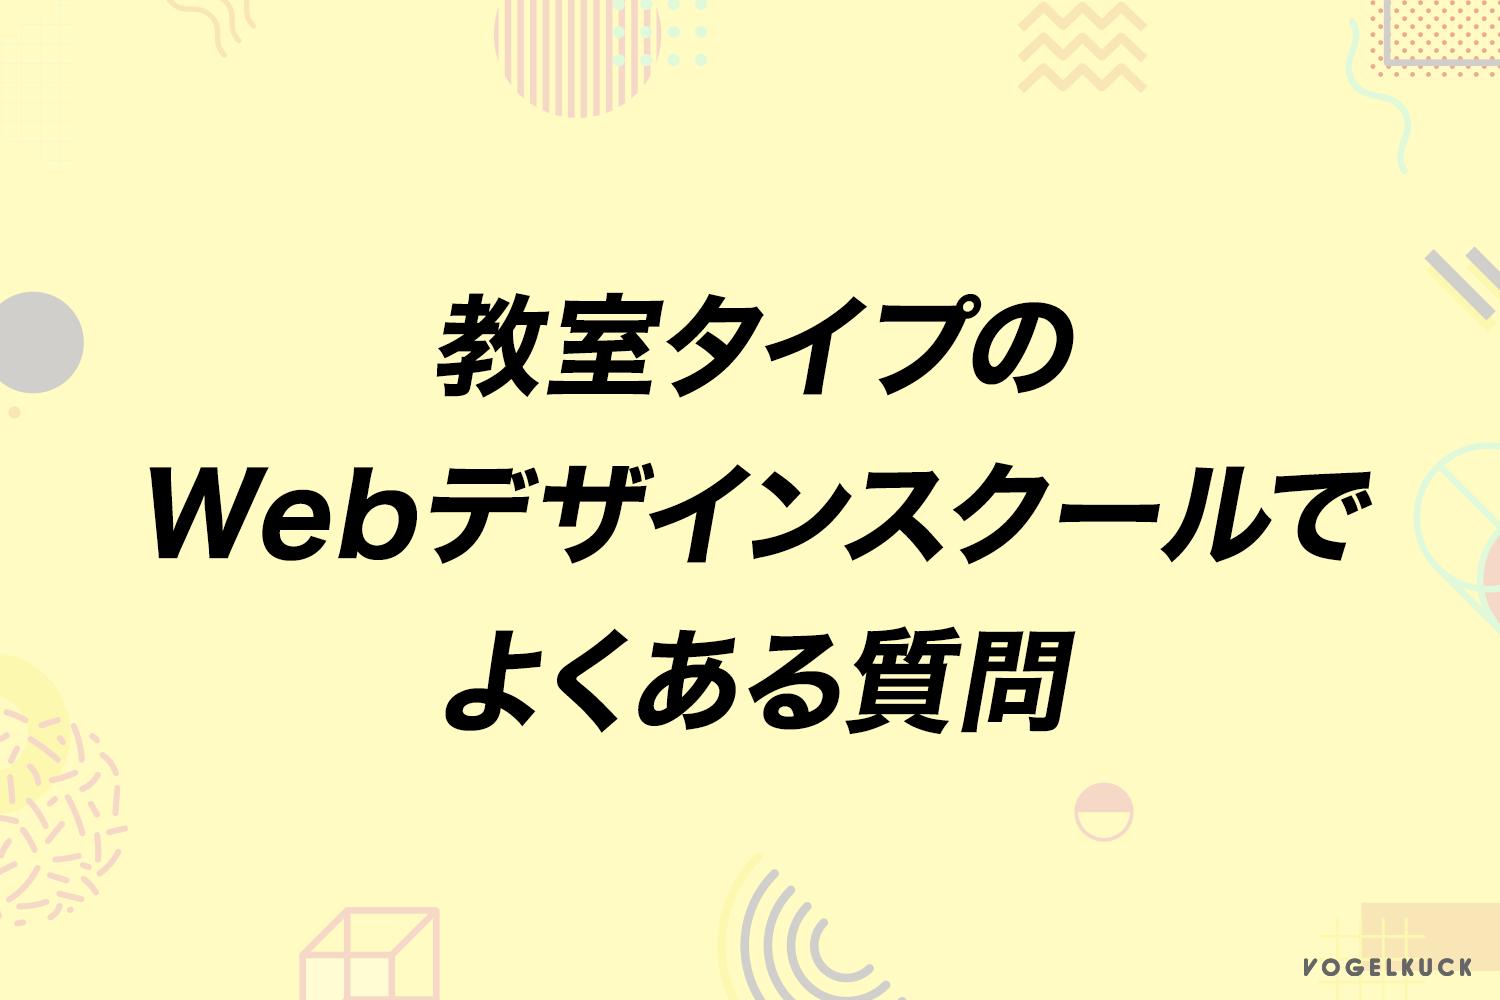 大阪のWebデザインスクールでよくある質問